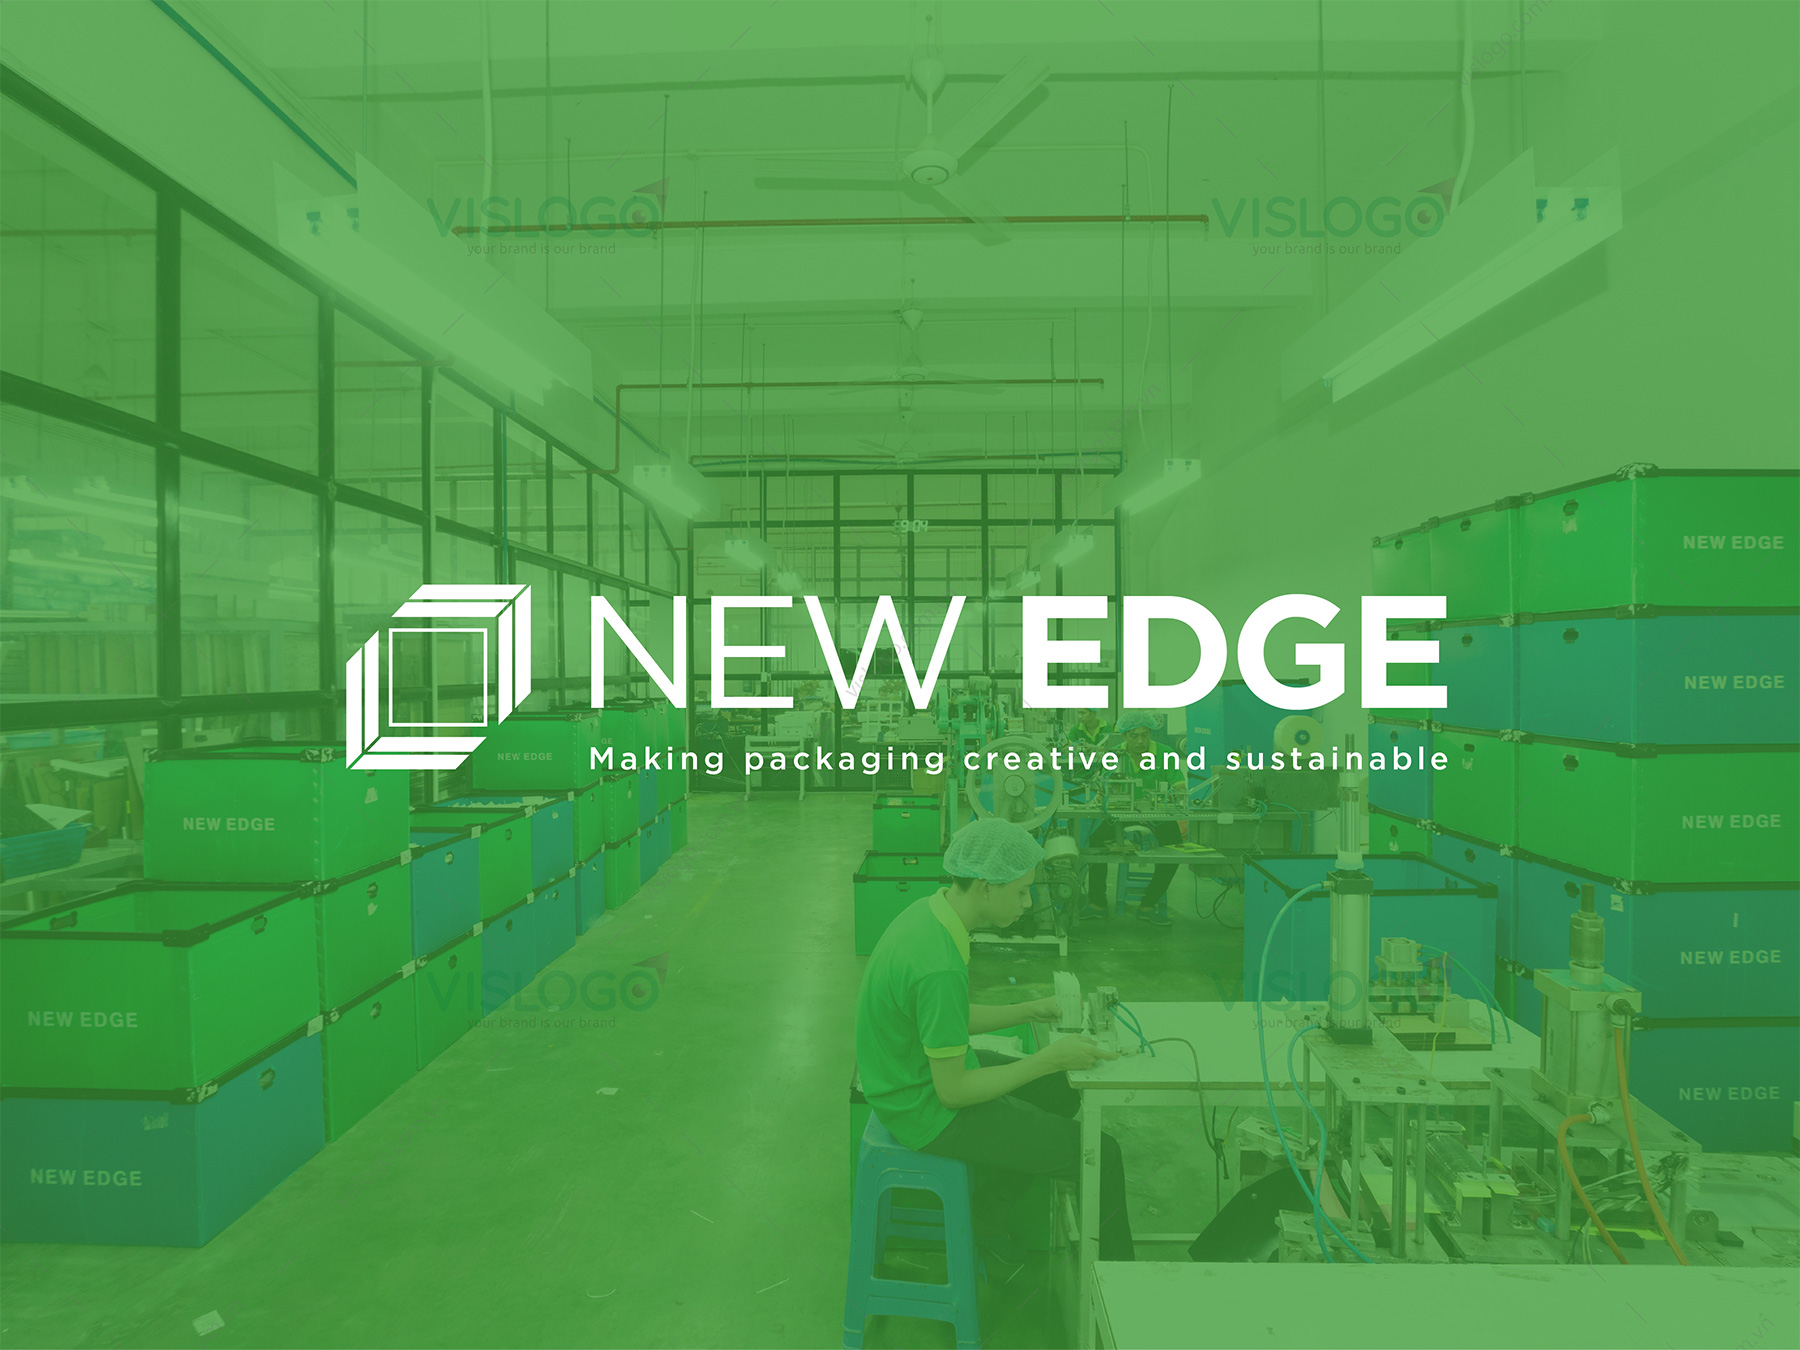 Thiết kế logo, ấn phẩm nhận diện, catalog New Edge